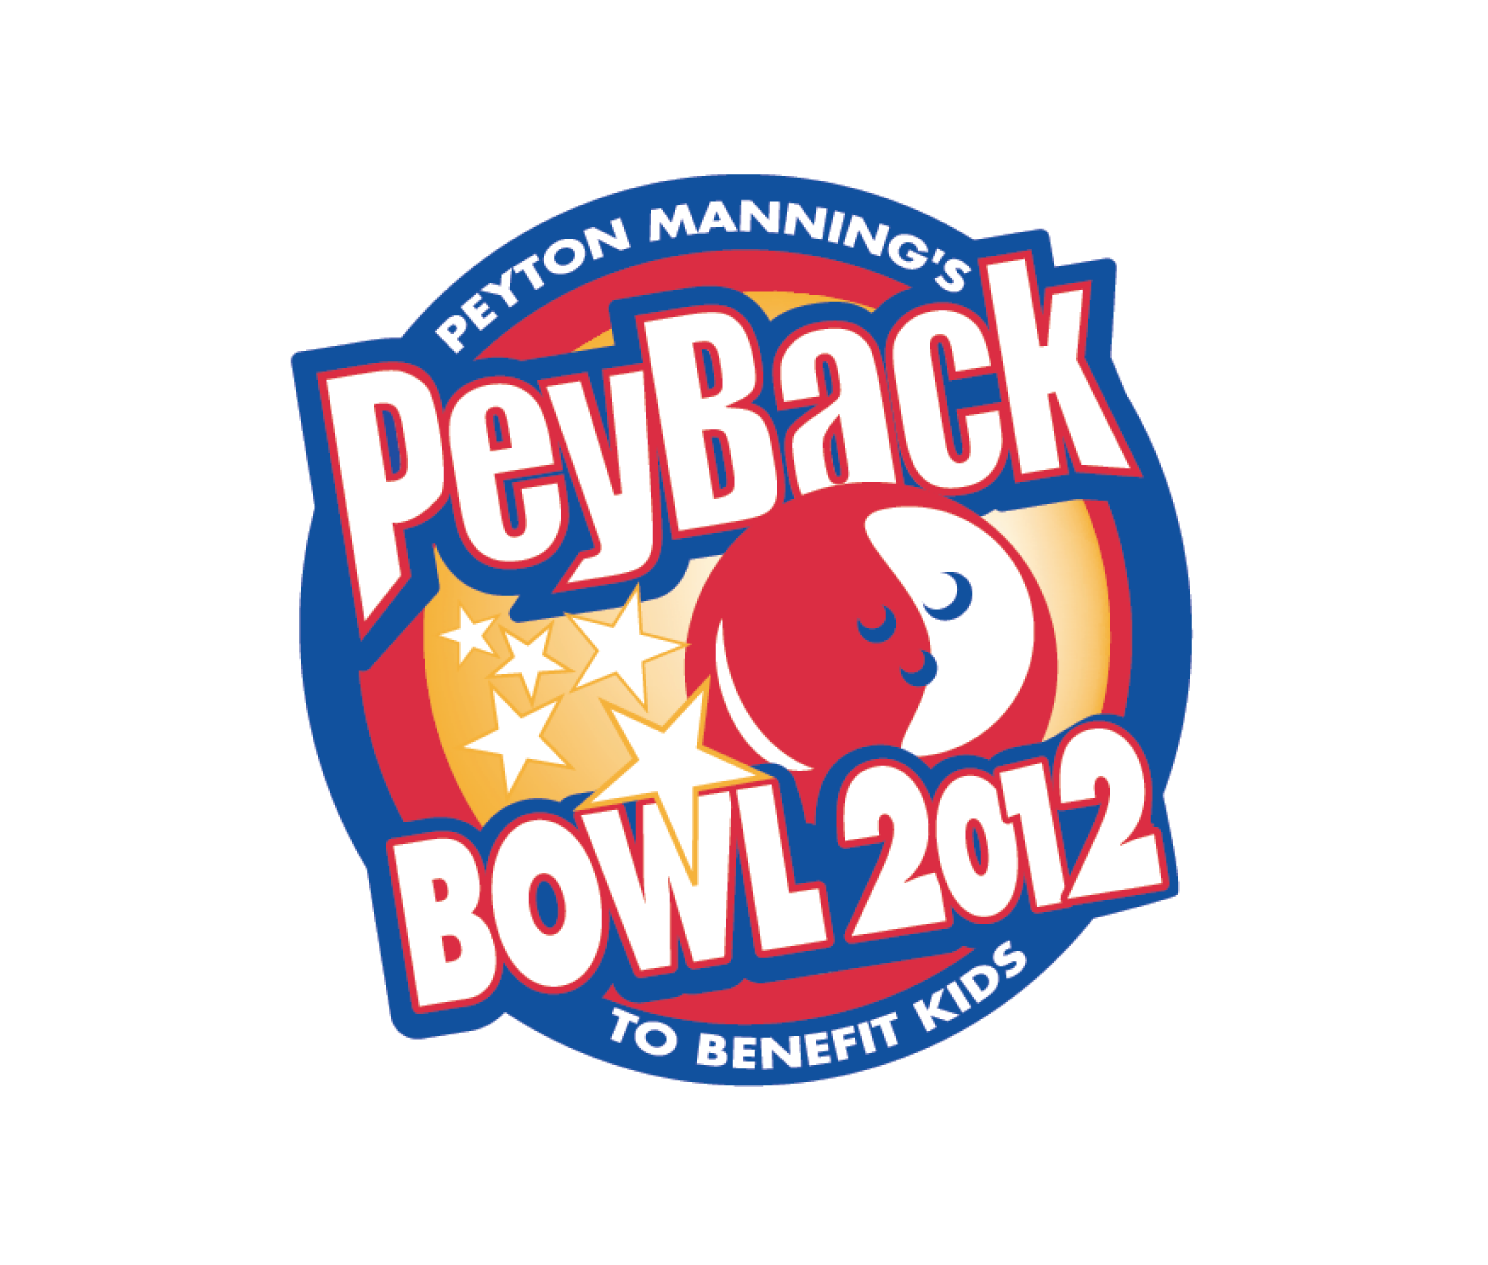 Peyton Manning’s PeyBack Foundation Logo Design